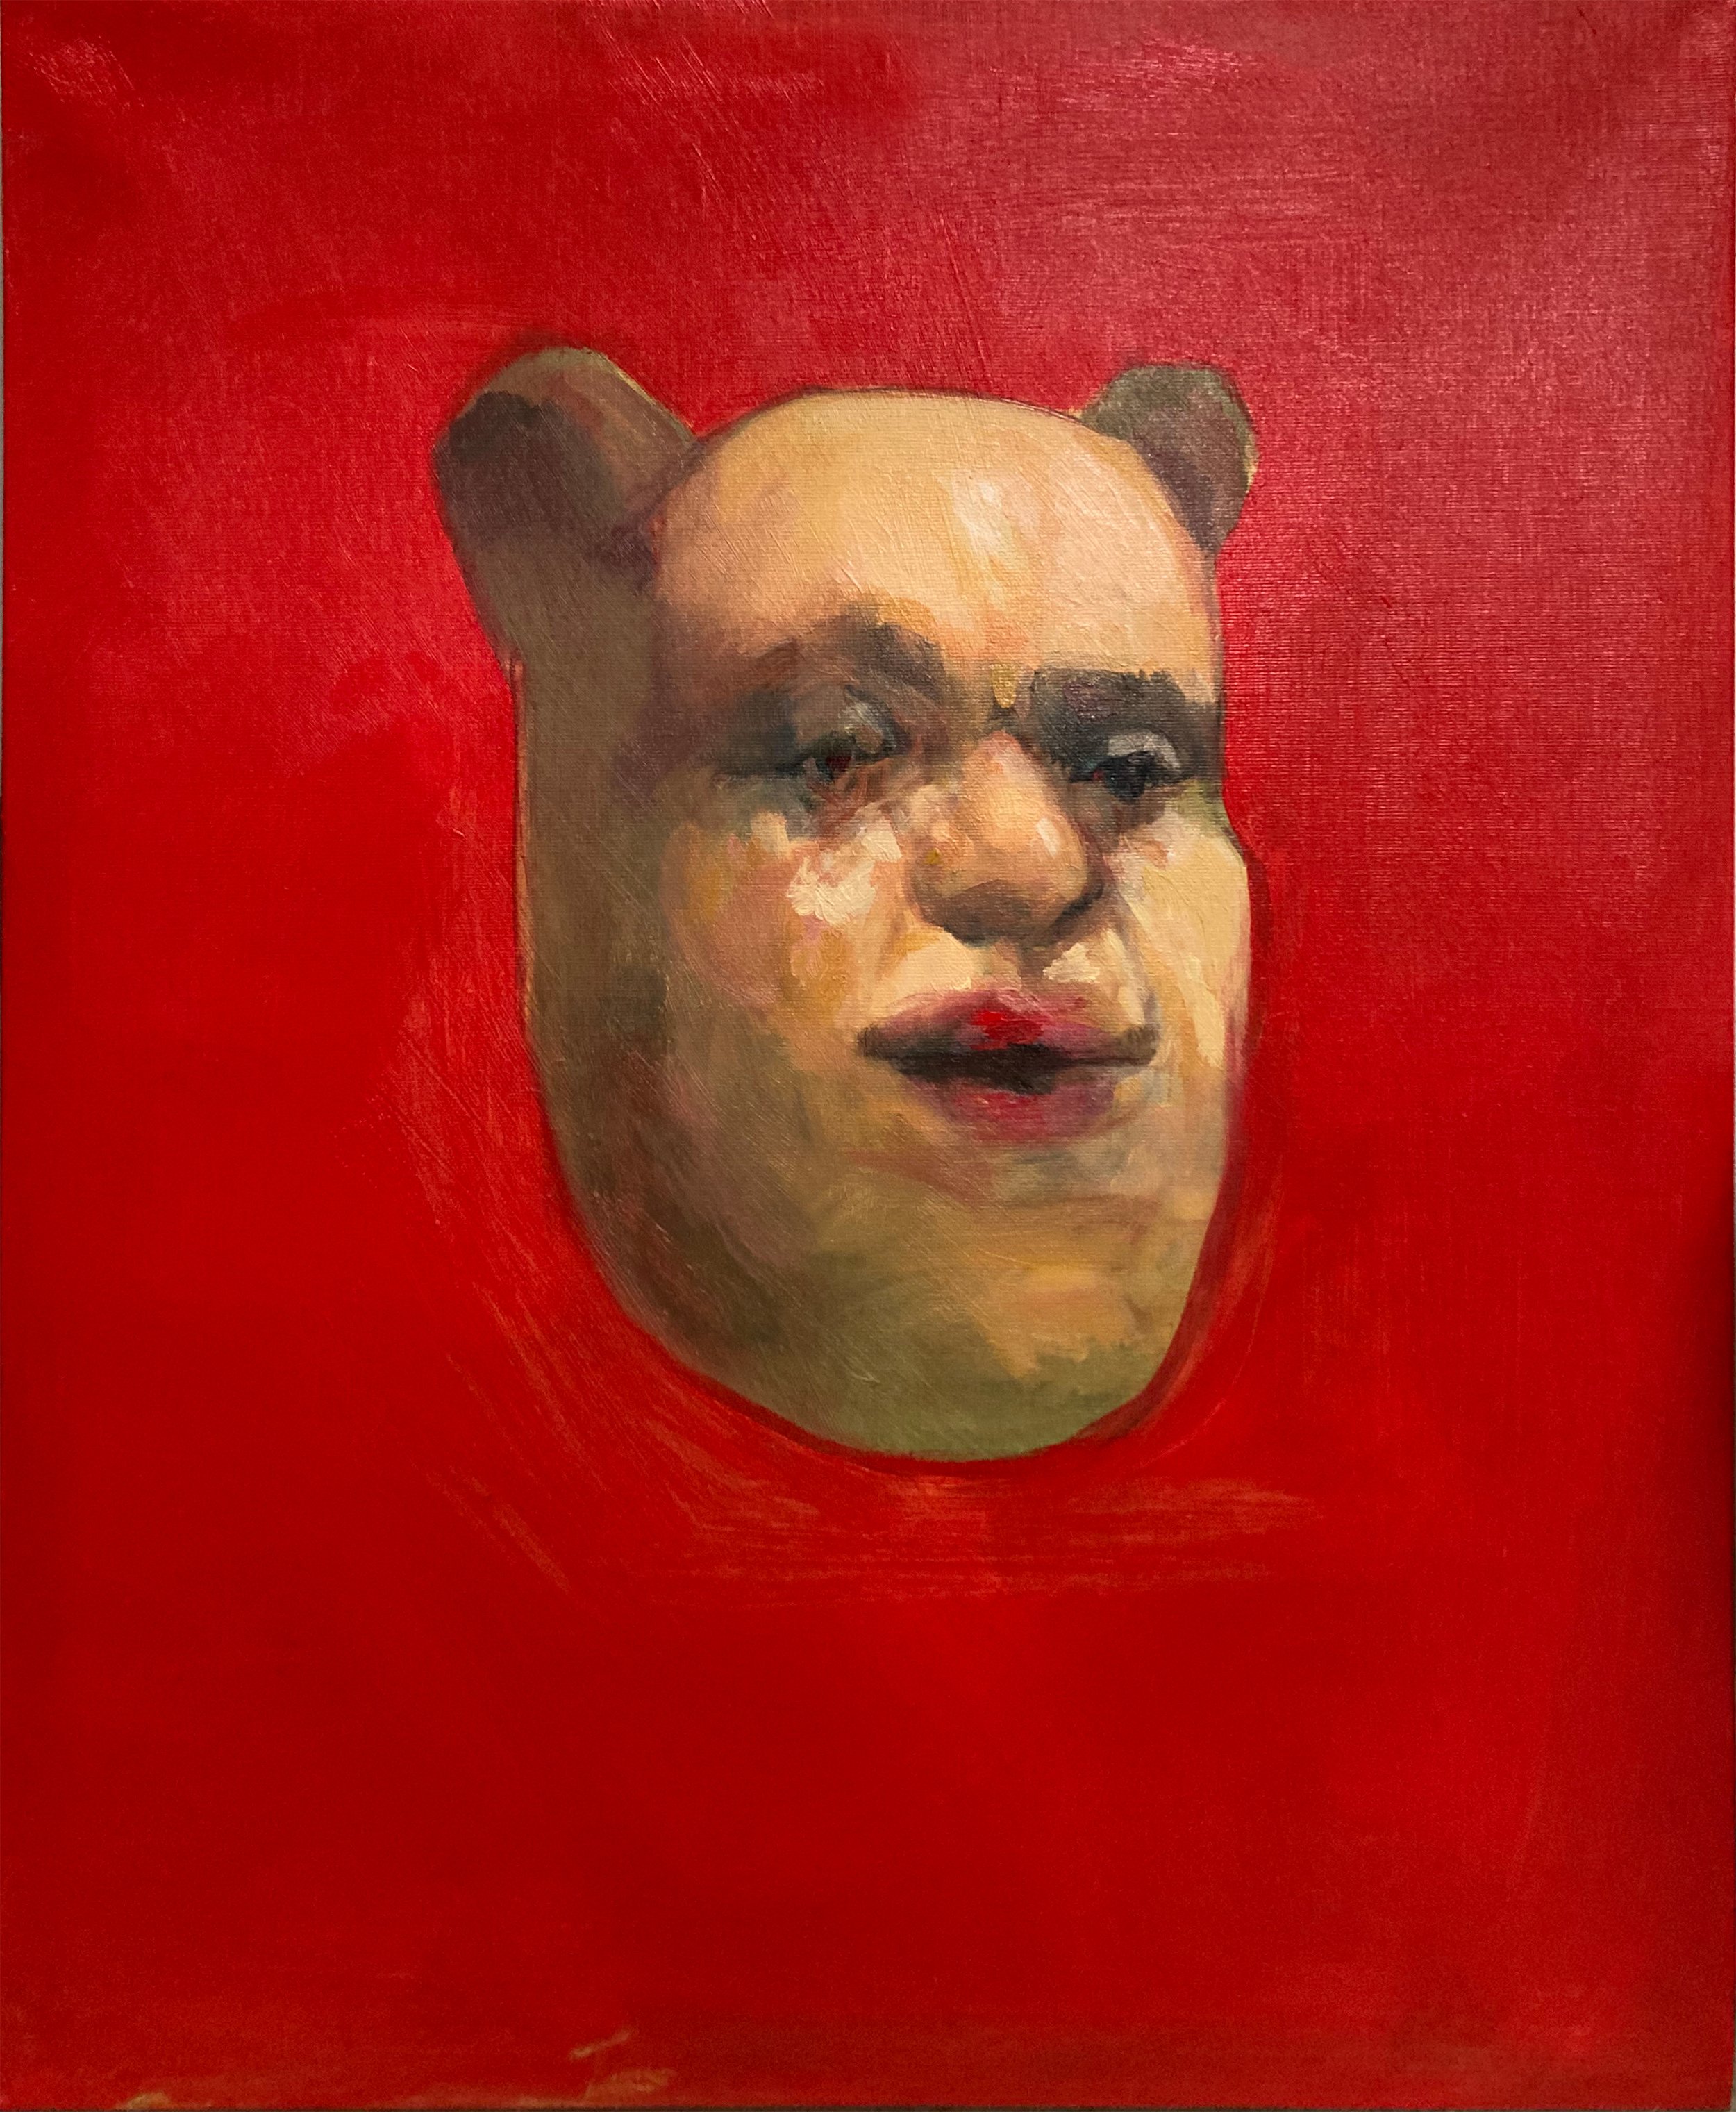  Bear 3, 2021, Oil on canvas, 18 x 24” 